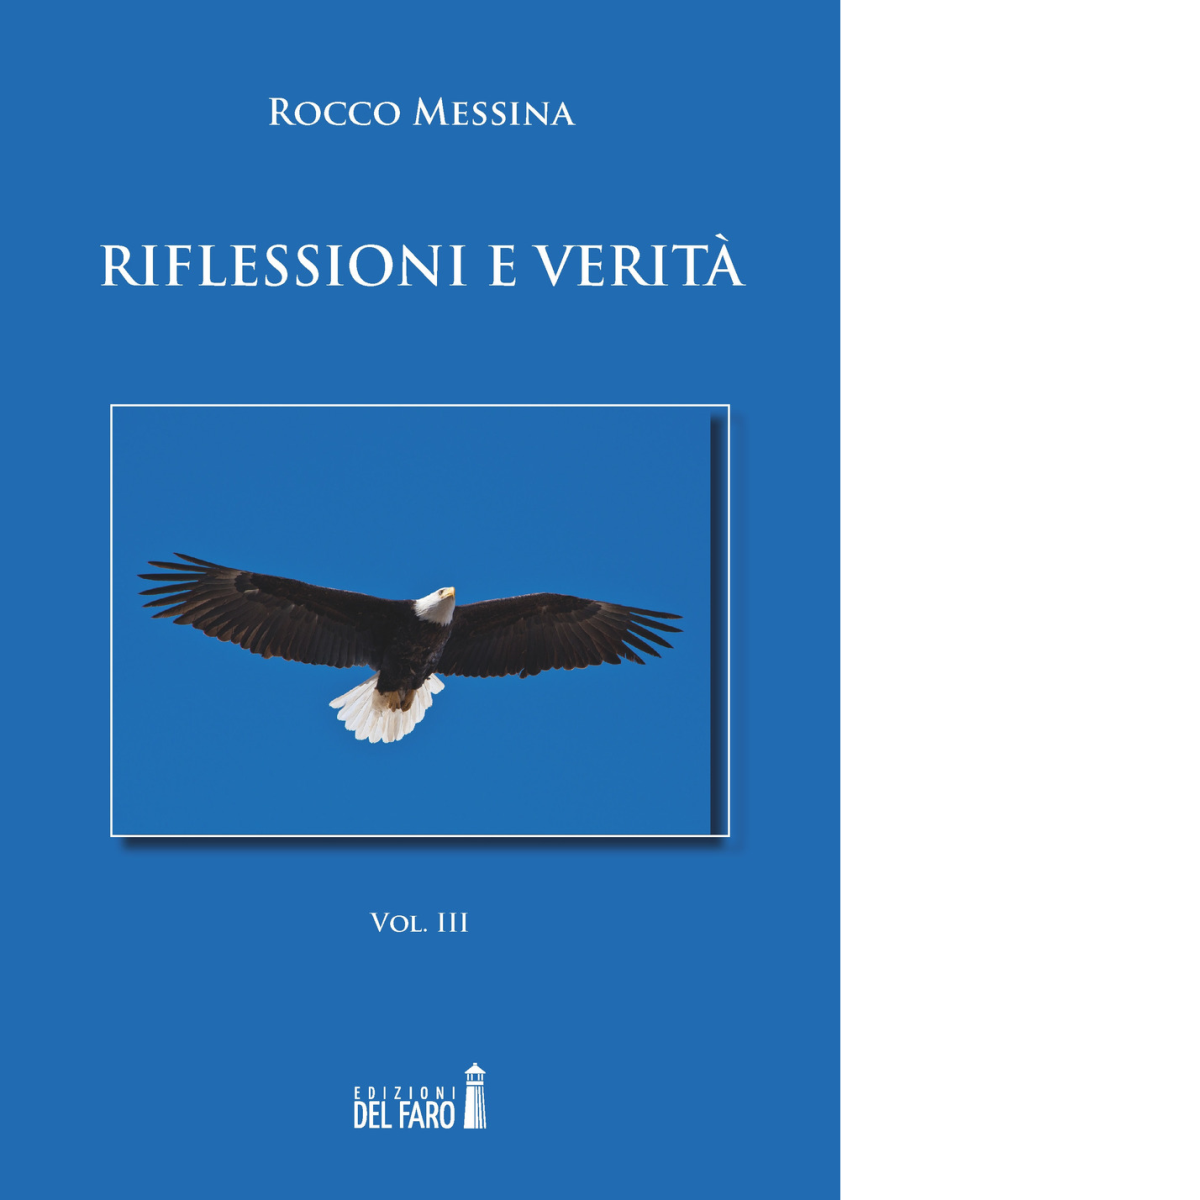 Riflessioni e verit? vol.3 di Rocco Messina - Edizioni Del Faro, 2018